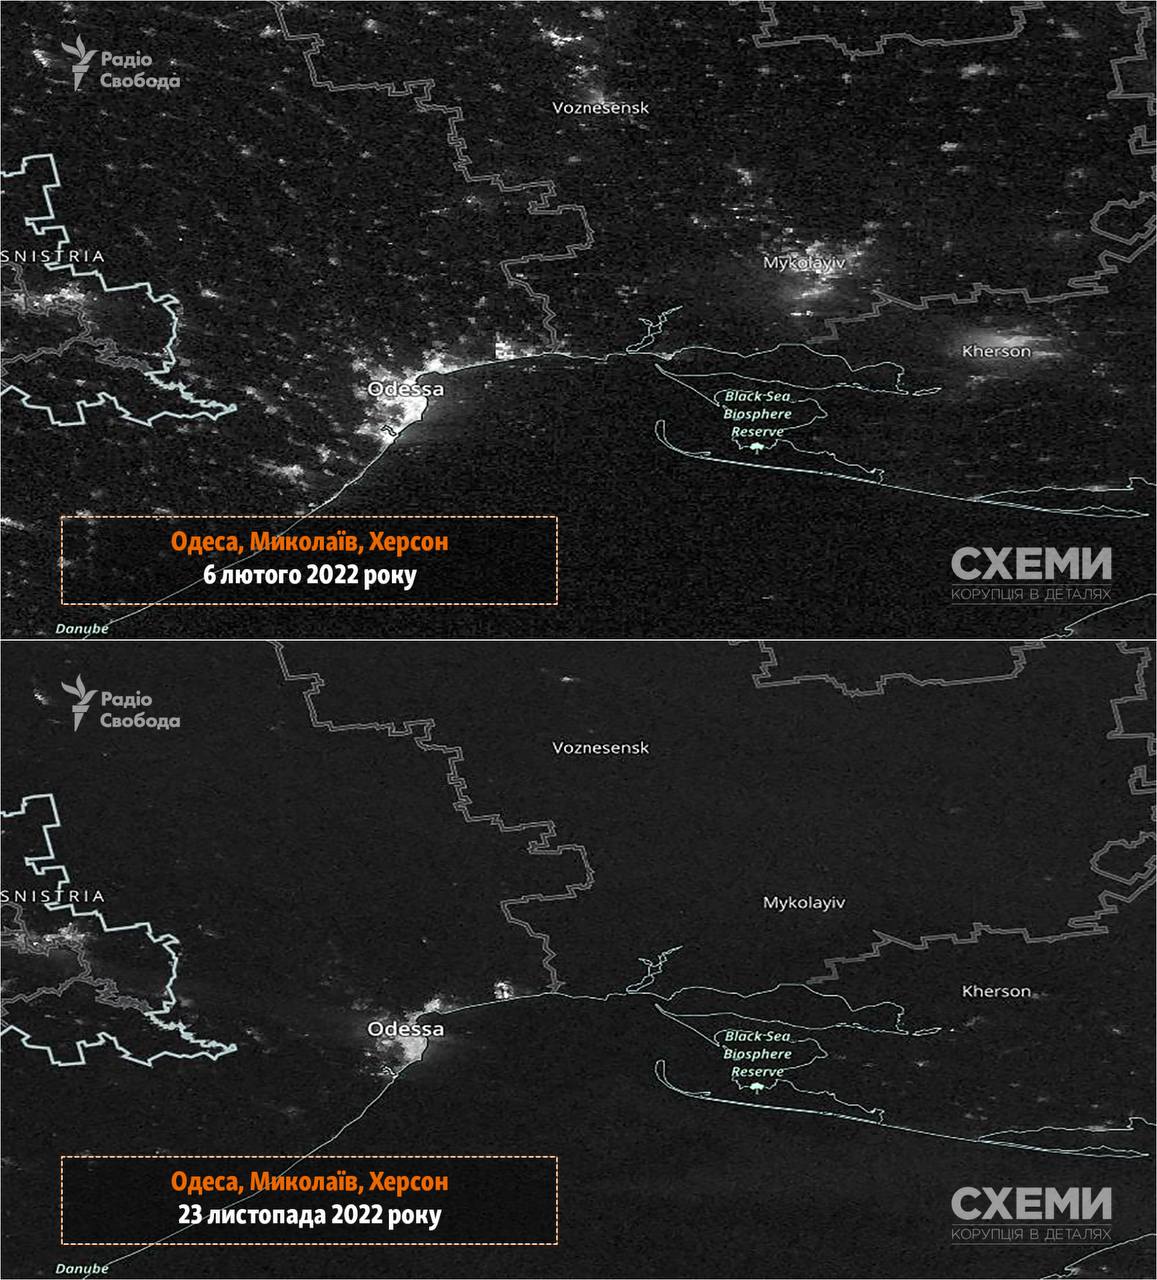 Схемы опубликовали снимки NASA Worldview, показывающие как выглядел вчерашний блекаут из космоса